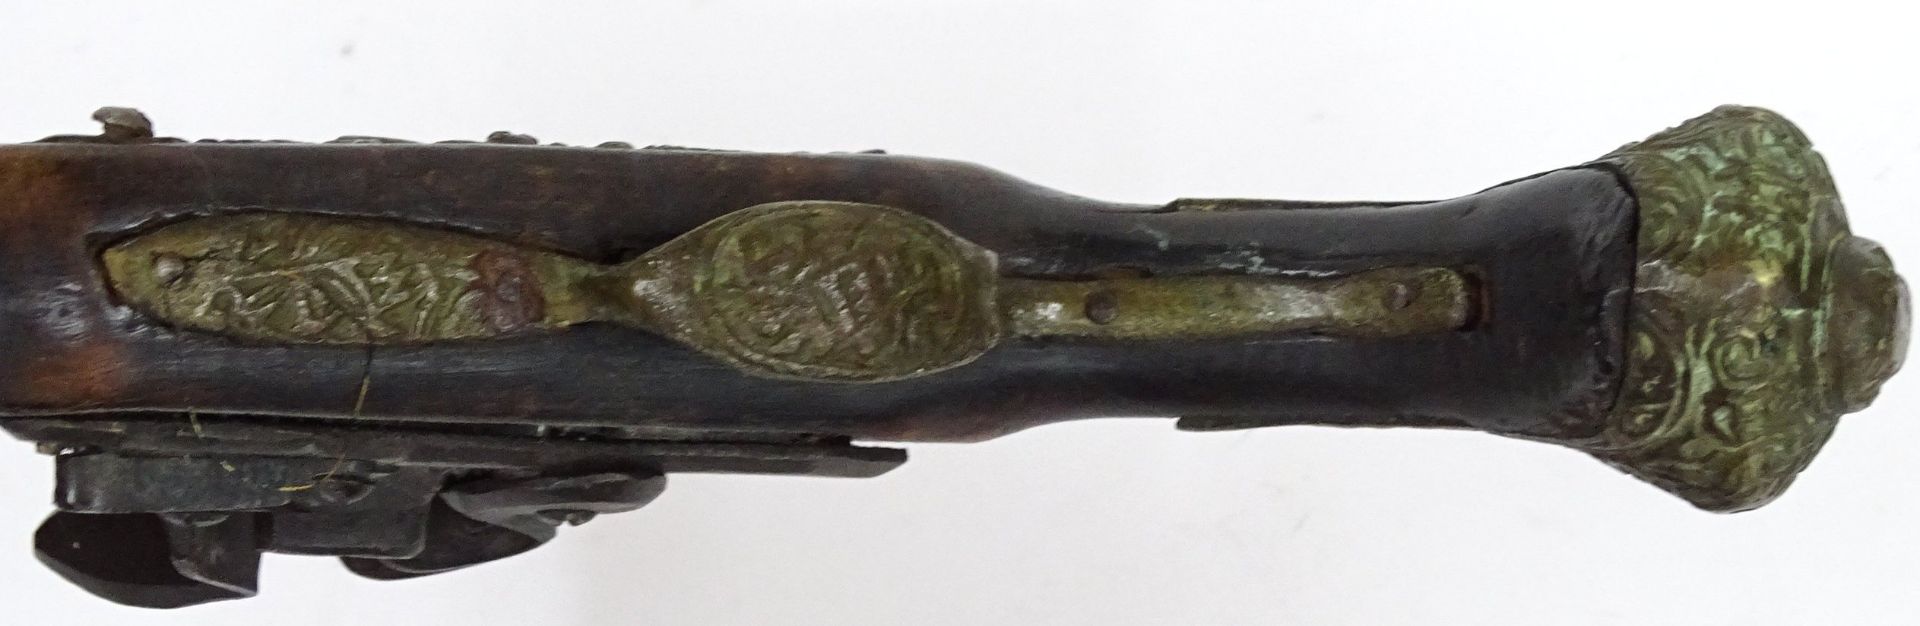 Steinschlloss-Pistole, wohl Deko. L-44 cm - Bild 7 aus 8